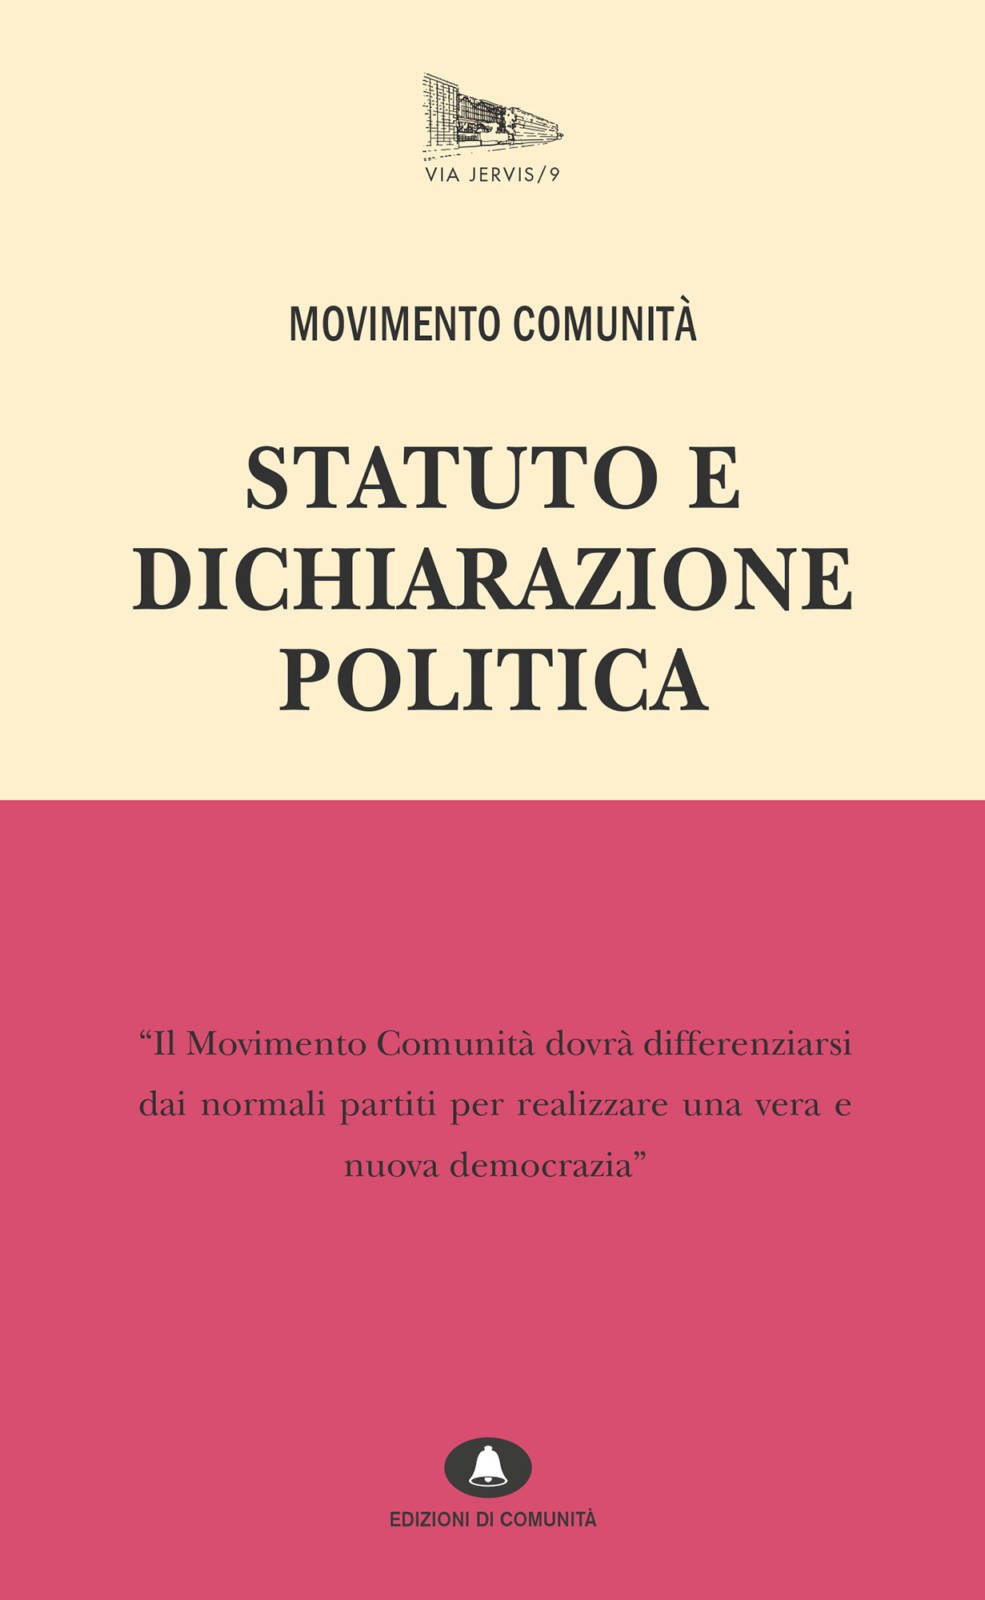 vj09-movimento-comunita-comunicazione-cover.jpg